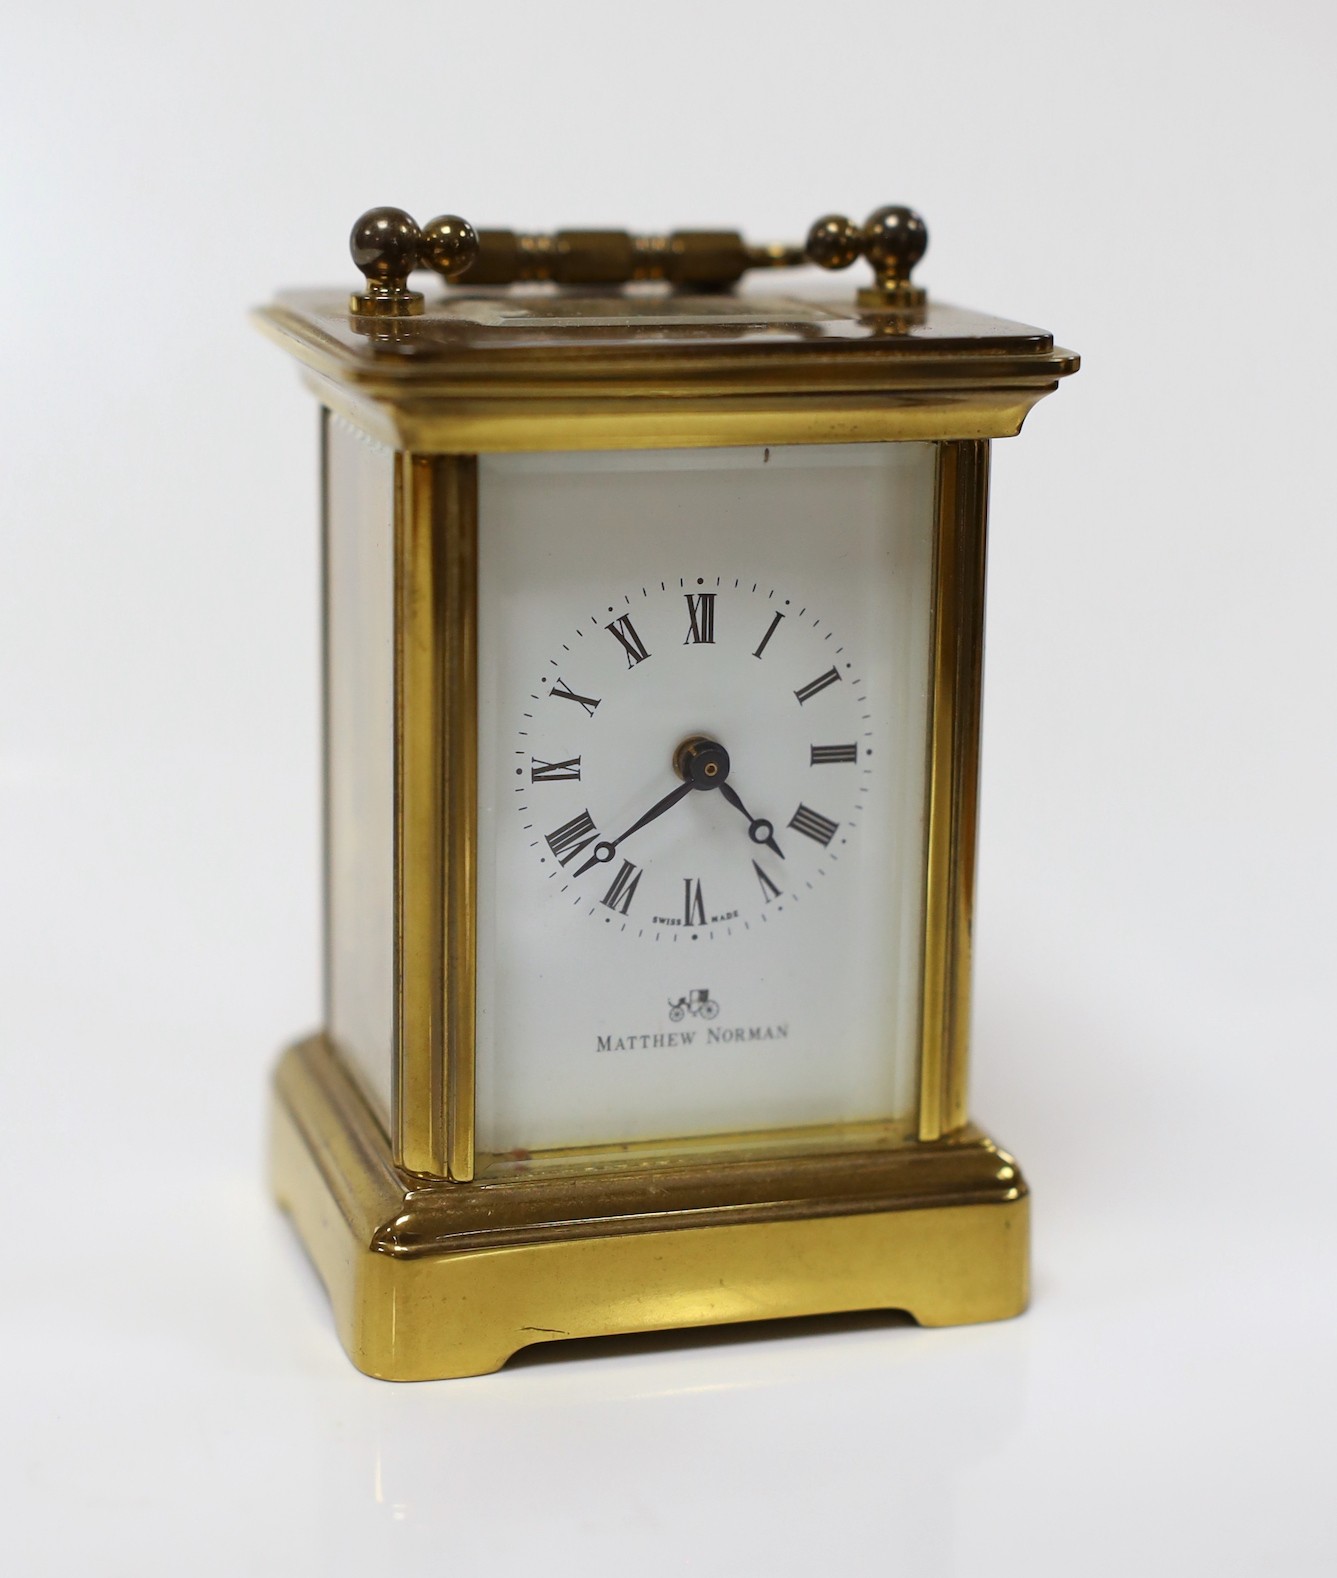 A Matthew Norman small brass carriage timepiece, 8cms high